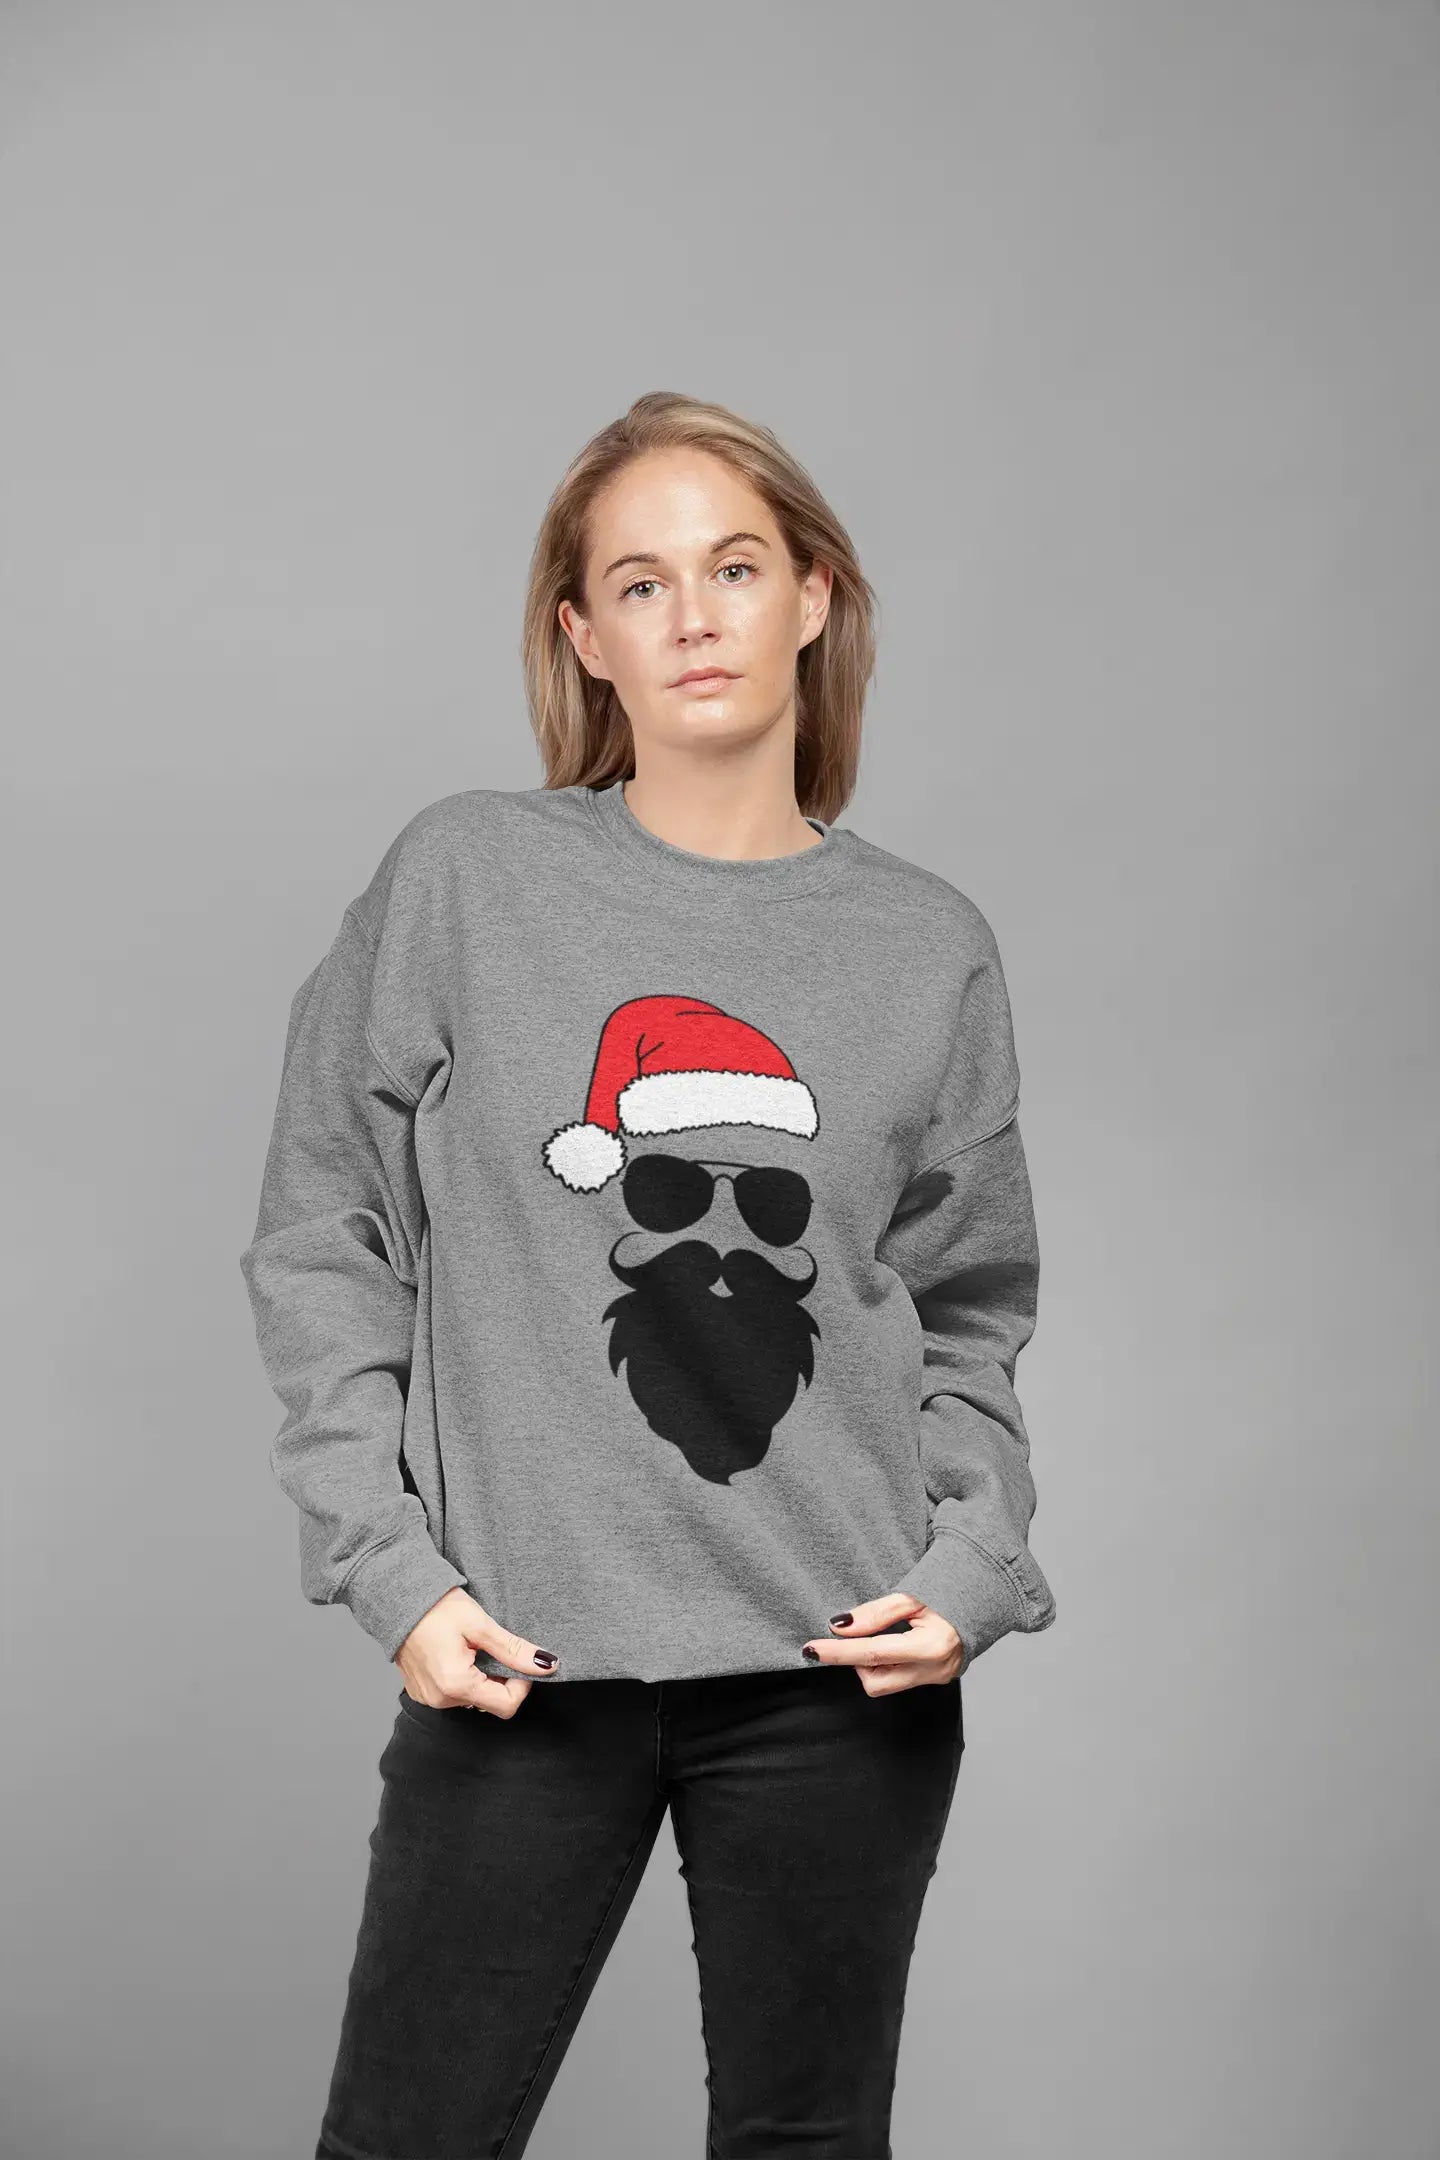 ULTRABASIC – Lustiges Weihnachts-Sweatshirt mit Weihnachtsmann-Motiv, <span>bedrucktes</span> <span>Grafik-</span> T-Shirt <span>für</span> <span>Damen,</span> cremiges Rosa